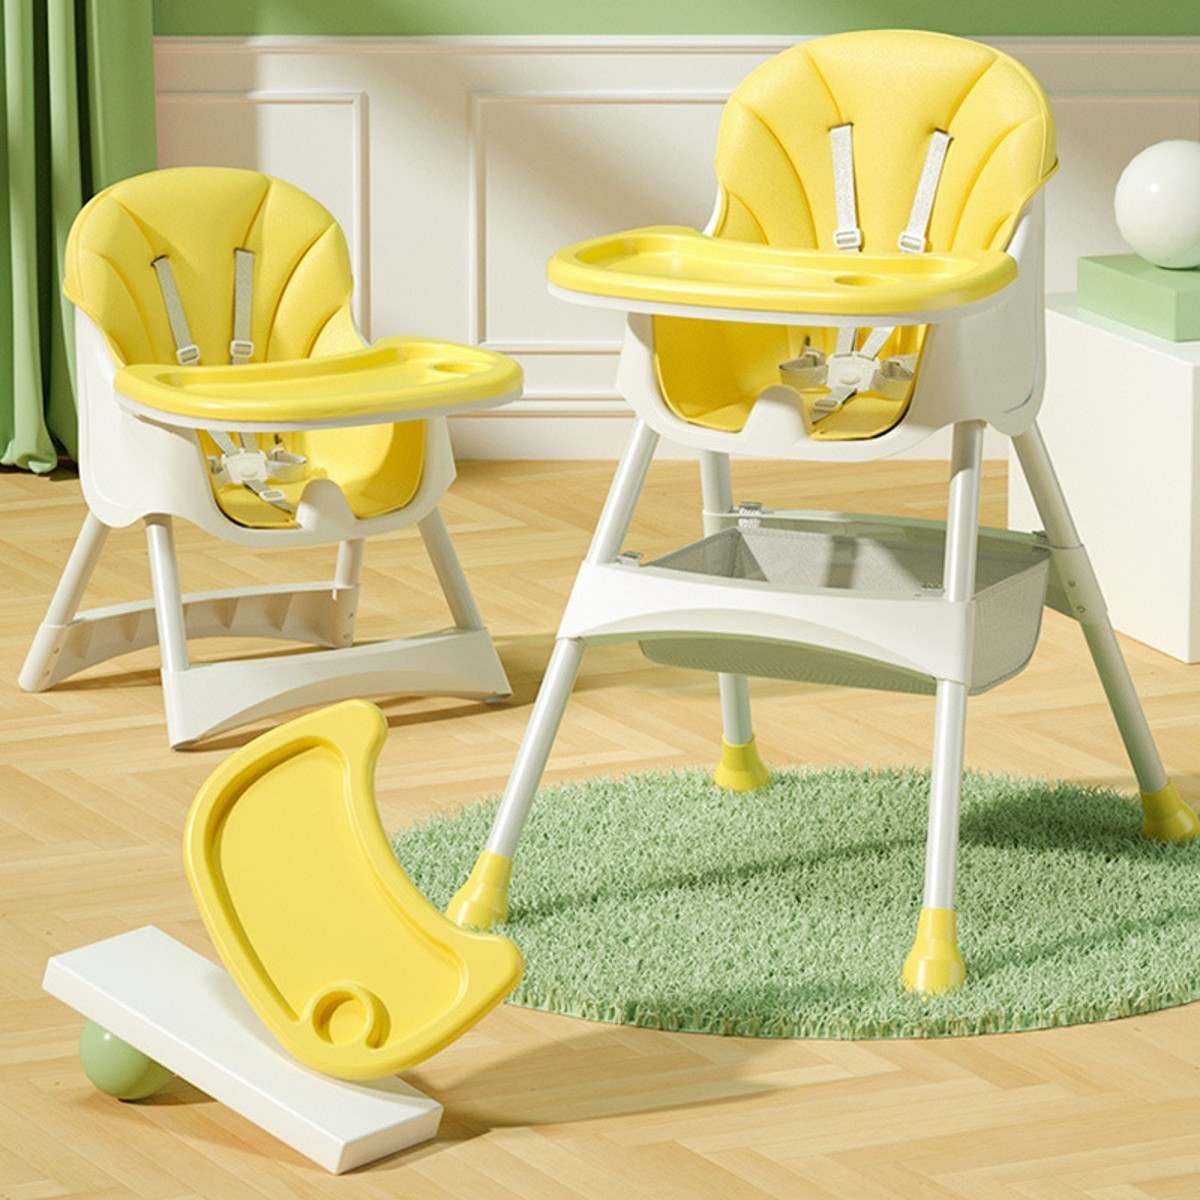 北欧婴儿成长椅子宝宝餐椅桌椅家用可调节儿童吃饭实木凳子高脚椅-阿里巴巴